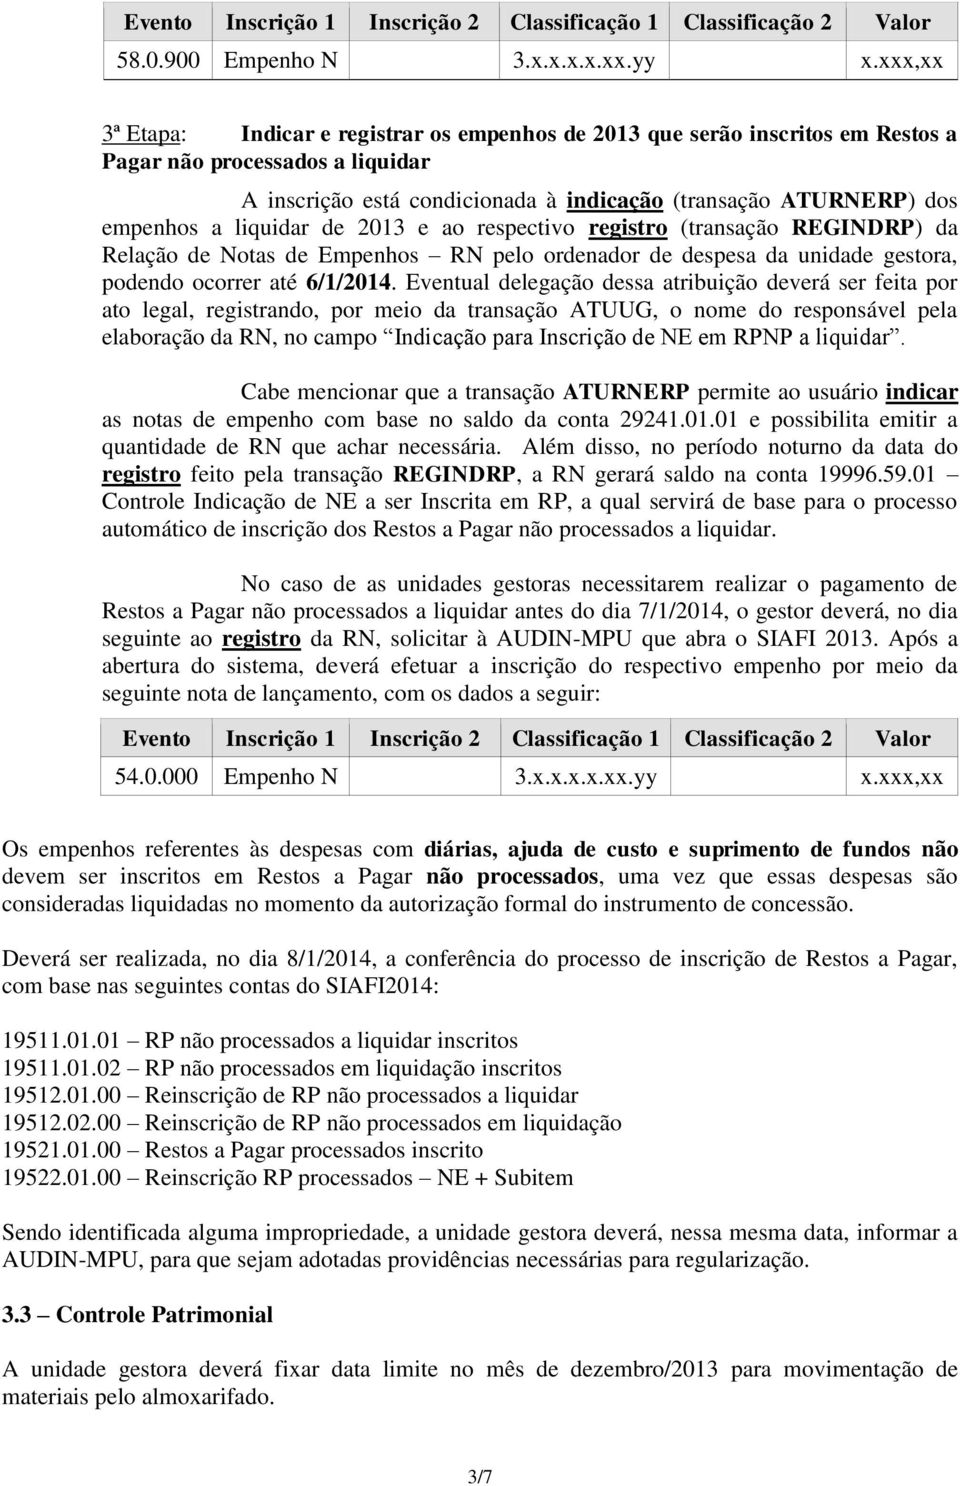 liquidar de 2013 e ao respectivo registro (transação REGINDRP) da Relação de Notas de Empenhos RN pelo ordenador de despesa da unidade gestora, podendo ocorrer até 6/1/2014.